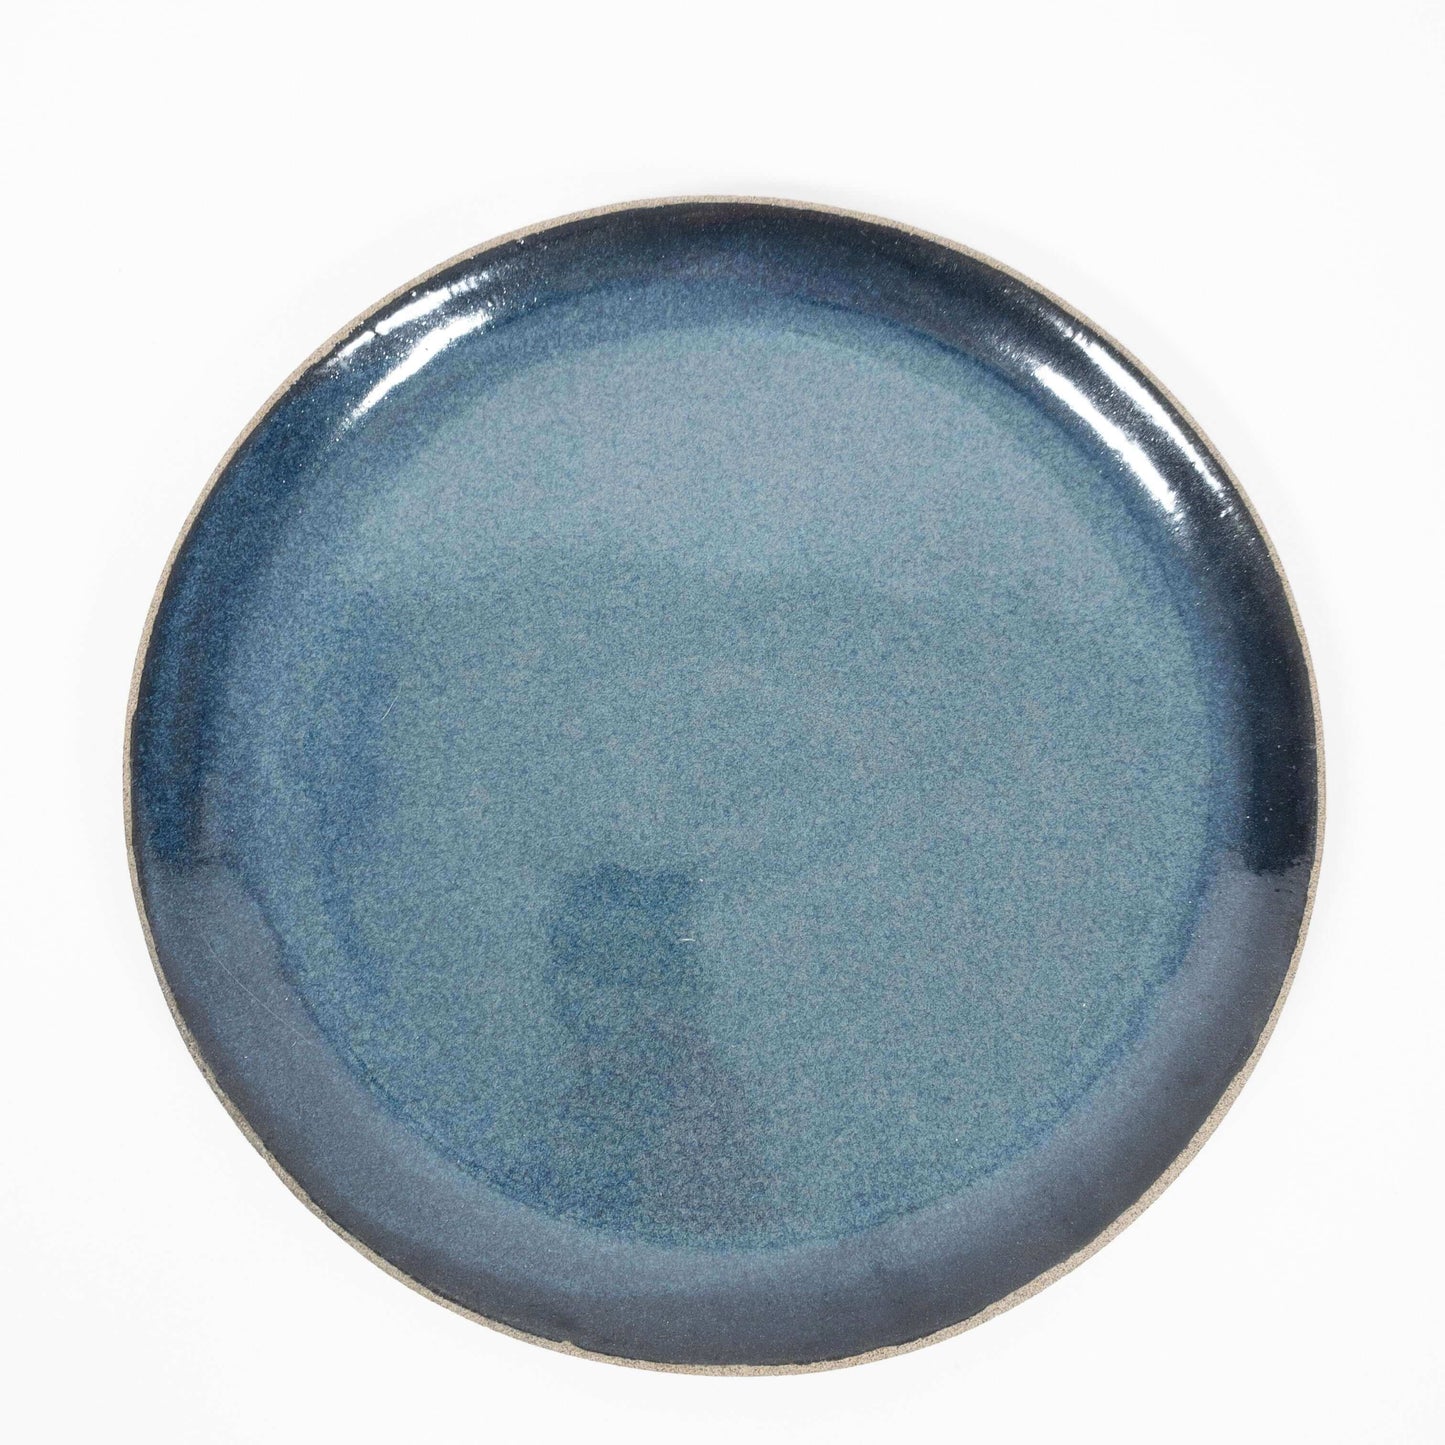 IVO keramiek serveerschaal blauw